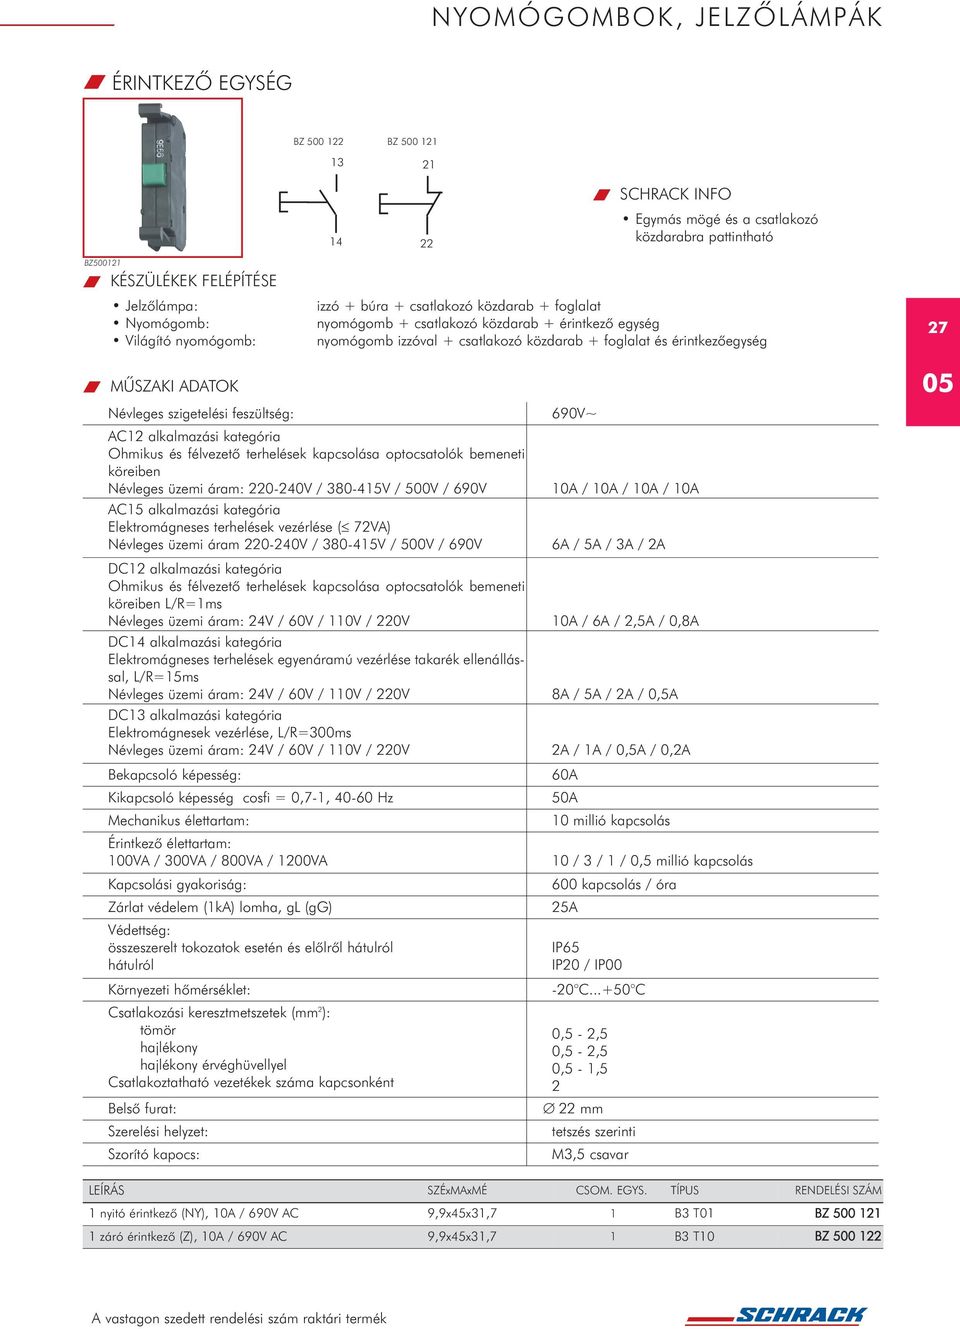 alkalmazási kategória Ohmikus és félvezetõ terhelések kapcsolása optocsatolók bemeneti köreiben Névleges üzemi áram: 220-240V / 380-45V / 500V / 690V AC5 alkalmazási kategória Elektromágneses